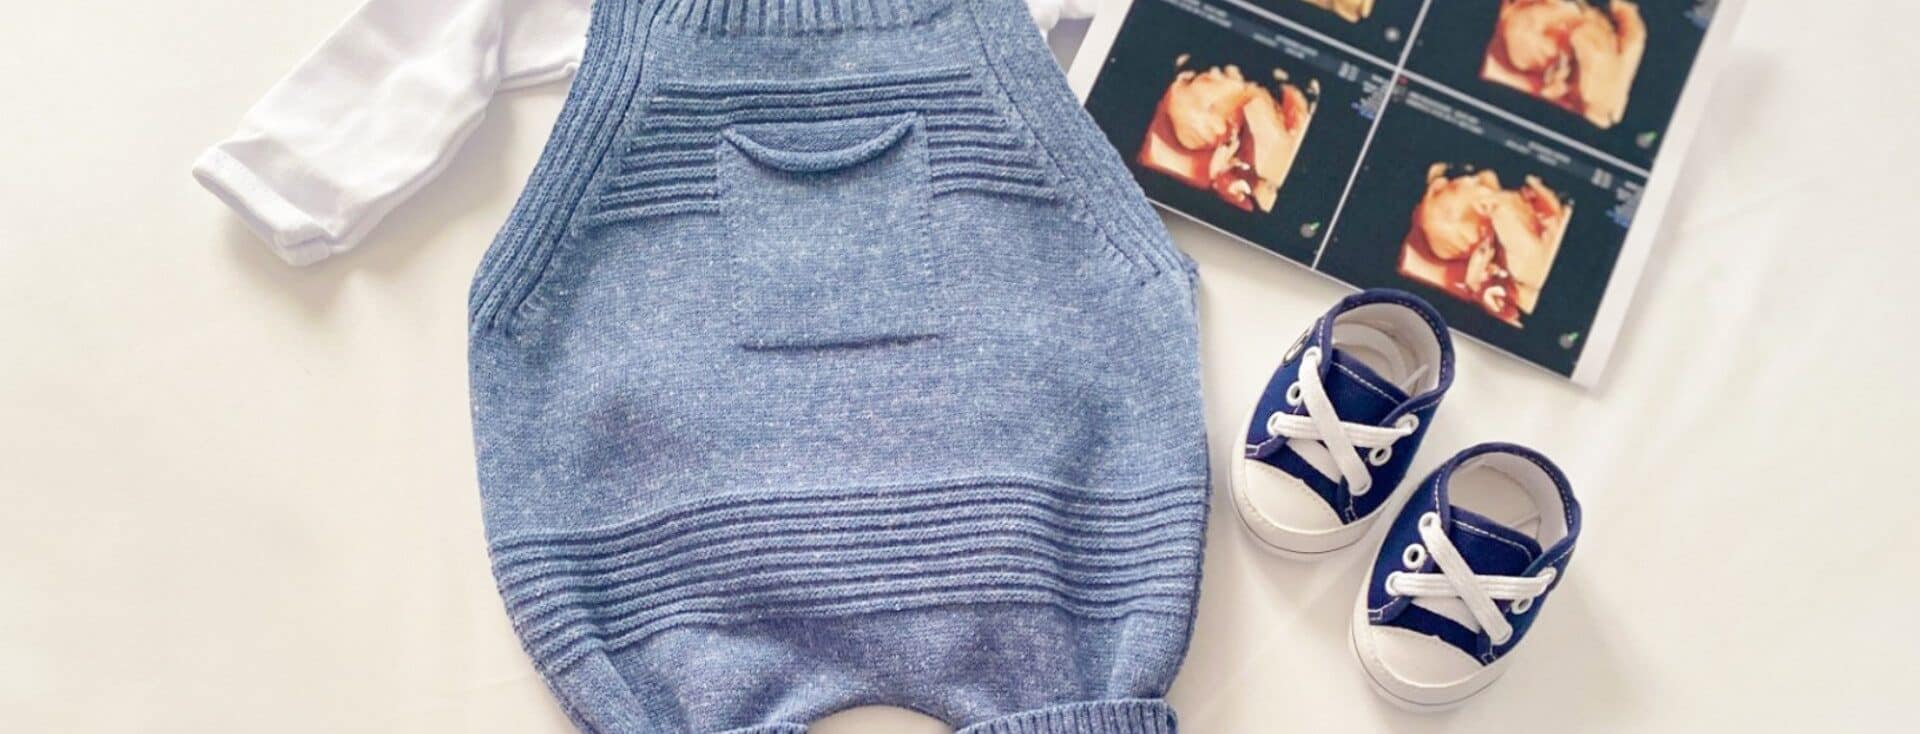 Imagem com uma roupinha de bebê azul, sapatinhos em azul e branco e uma imagem de ultrassom. Os elementos estão espalhados em cima de um fundo branco.